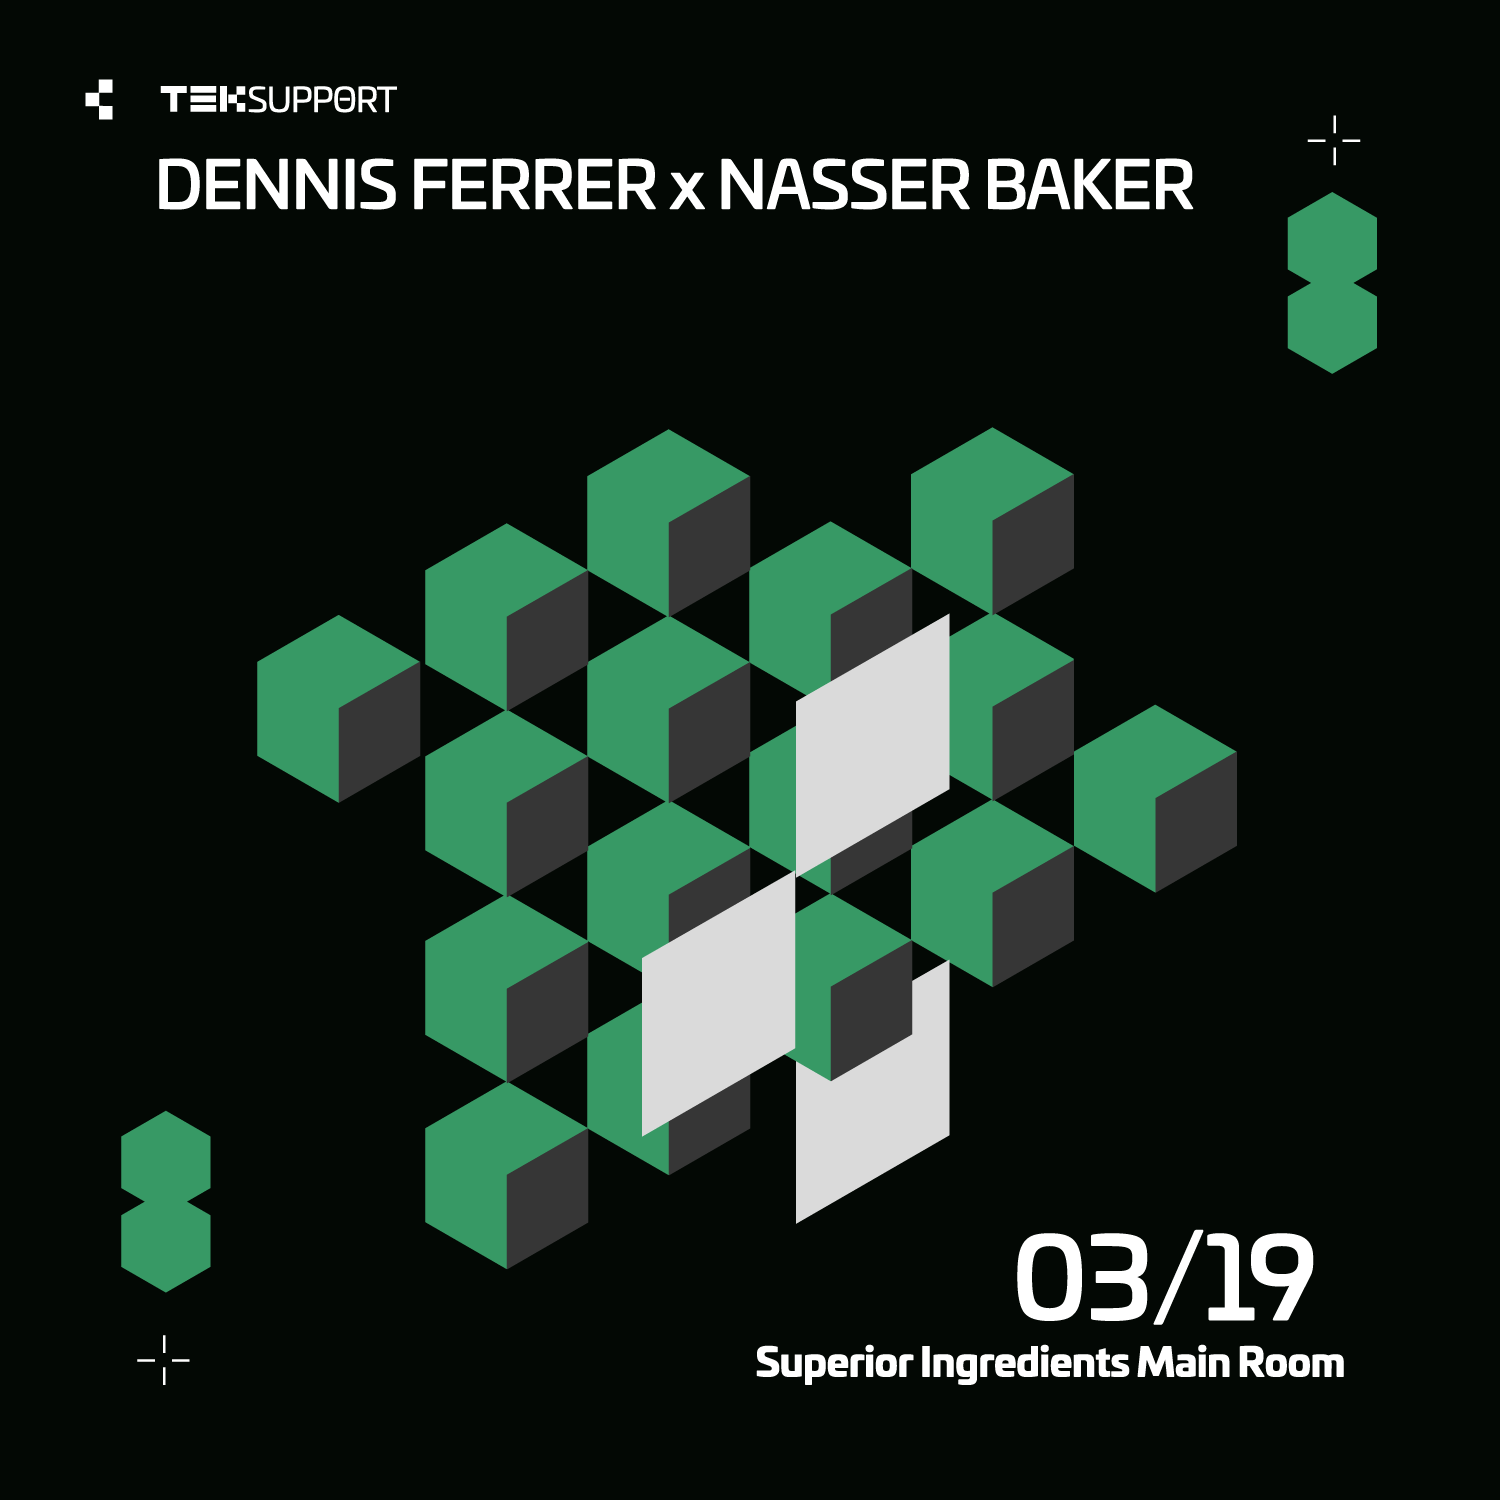 Teksupport: Dennis Ferrer x Nasser Baker - フライヤー裏